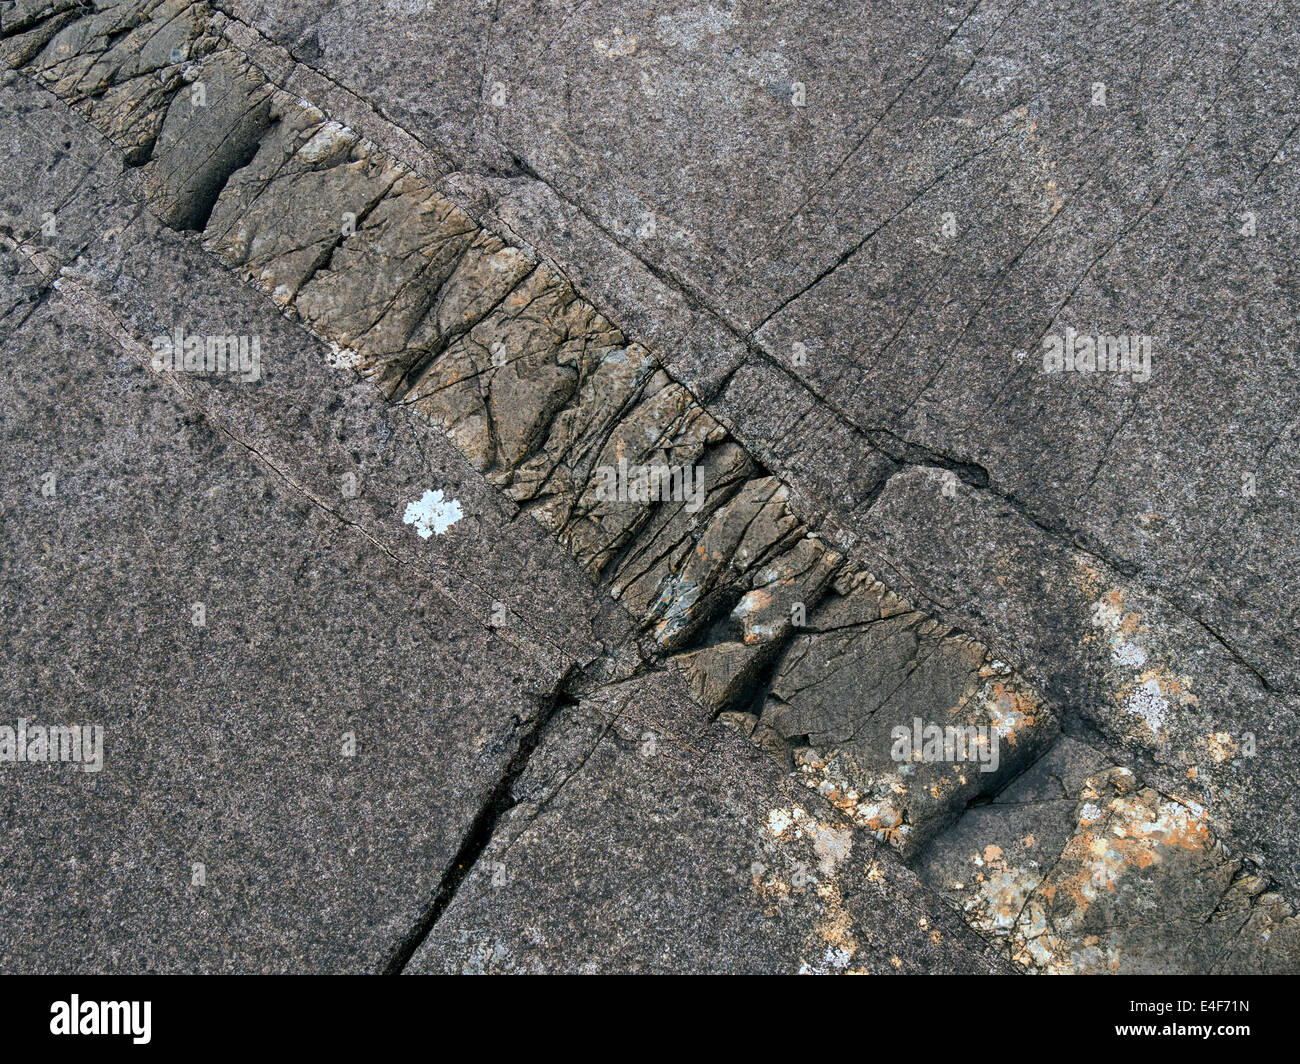 La cucitura di intrusione ignea glaciale levigato e segnato gabbri rock, Isola di Skye, Scotland, Regno Unito Foto Stock